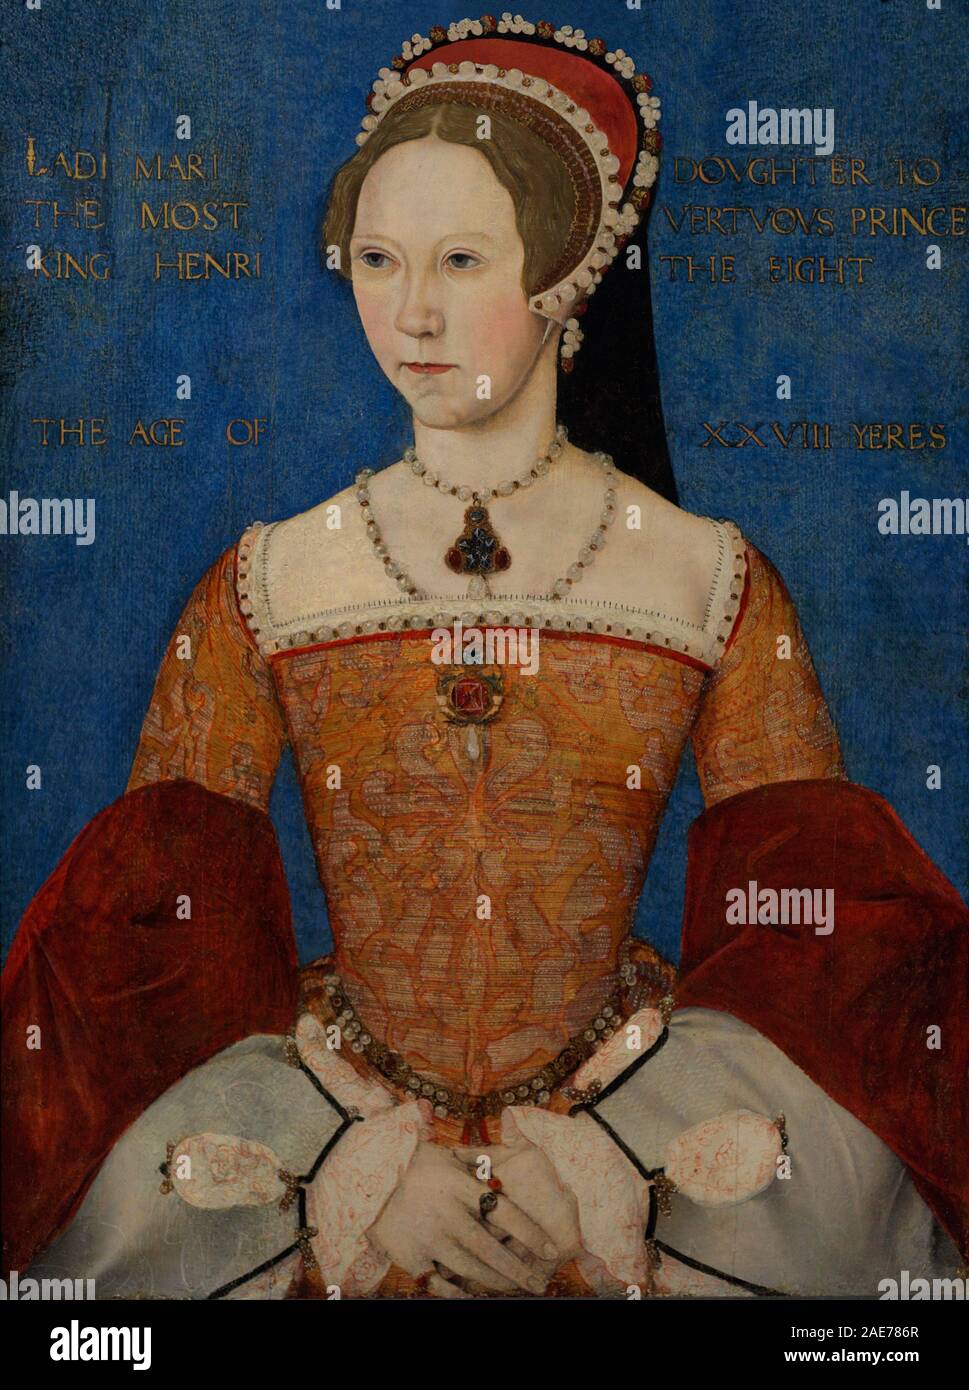 María je de Inglaterra (1516-1558). Reina de Inglaterra e Irlanda de 1553-1558. Retrato de María Tudor a los 28 años realizado por el maestro John. Oleo sobre tabla, 1544. National Portrait Gallery. Londres, Angleterre. Banque D'Images